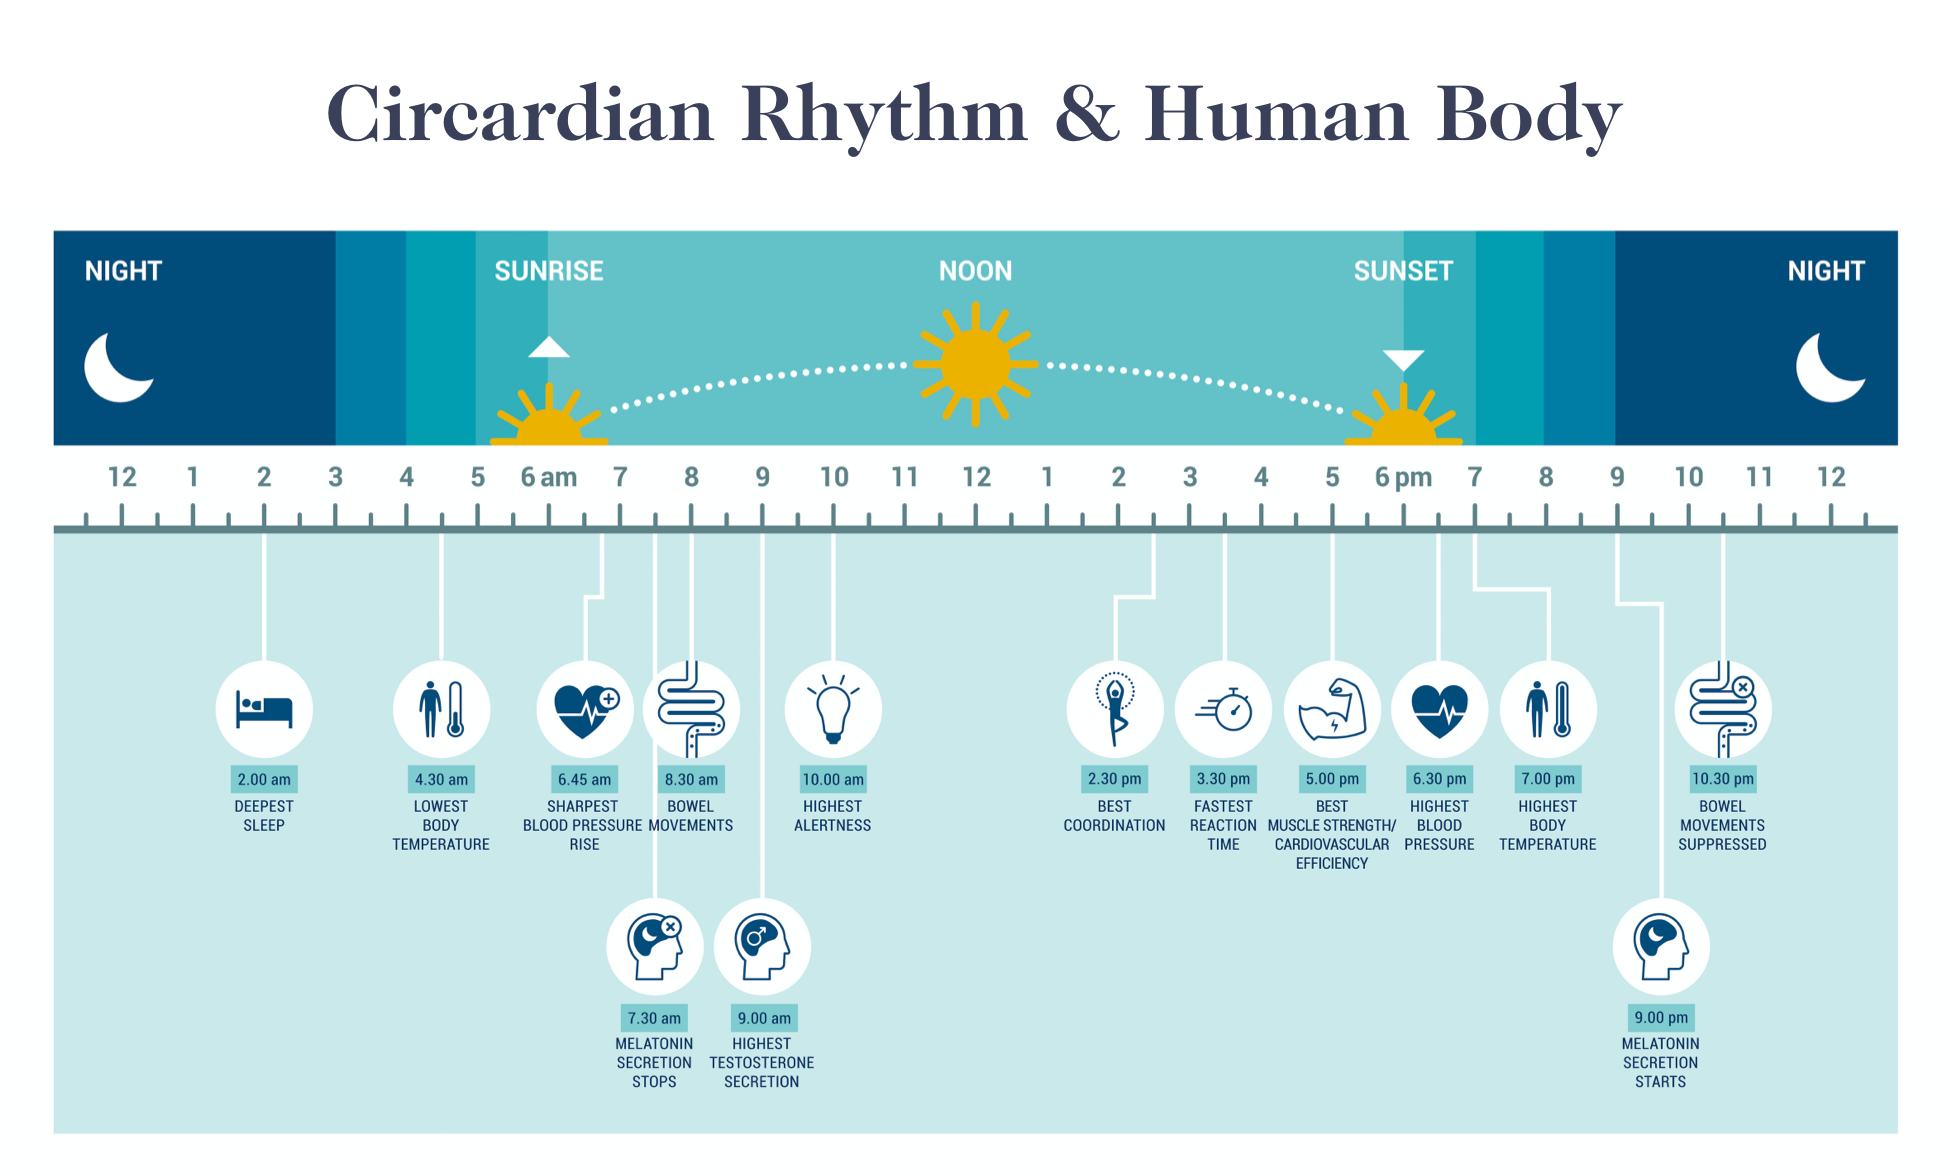 Sleep and Health: Circadian rhythm